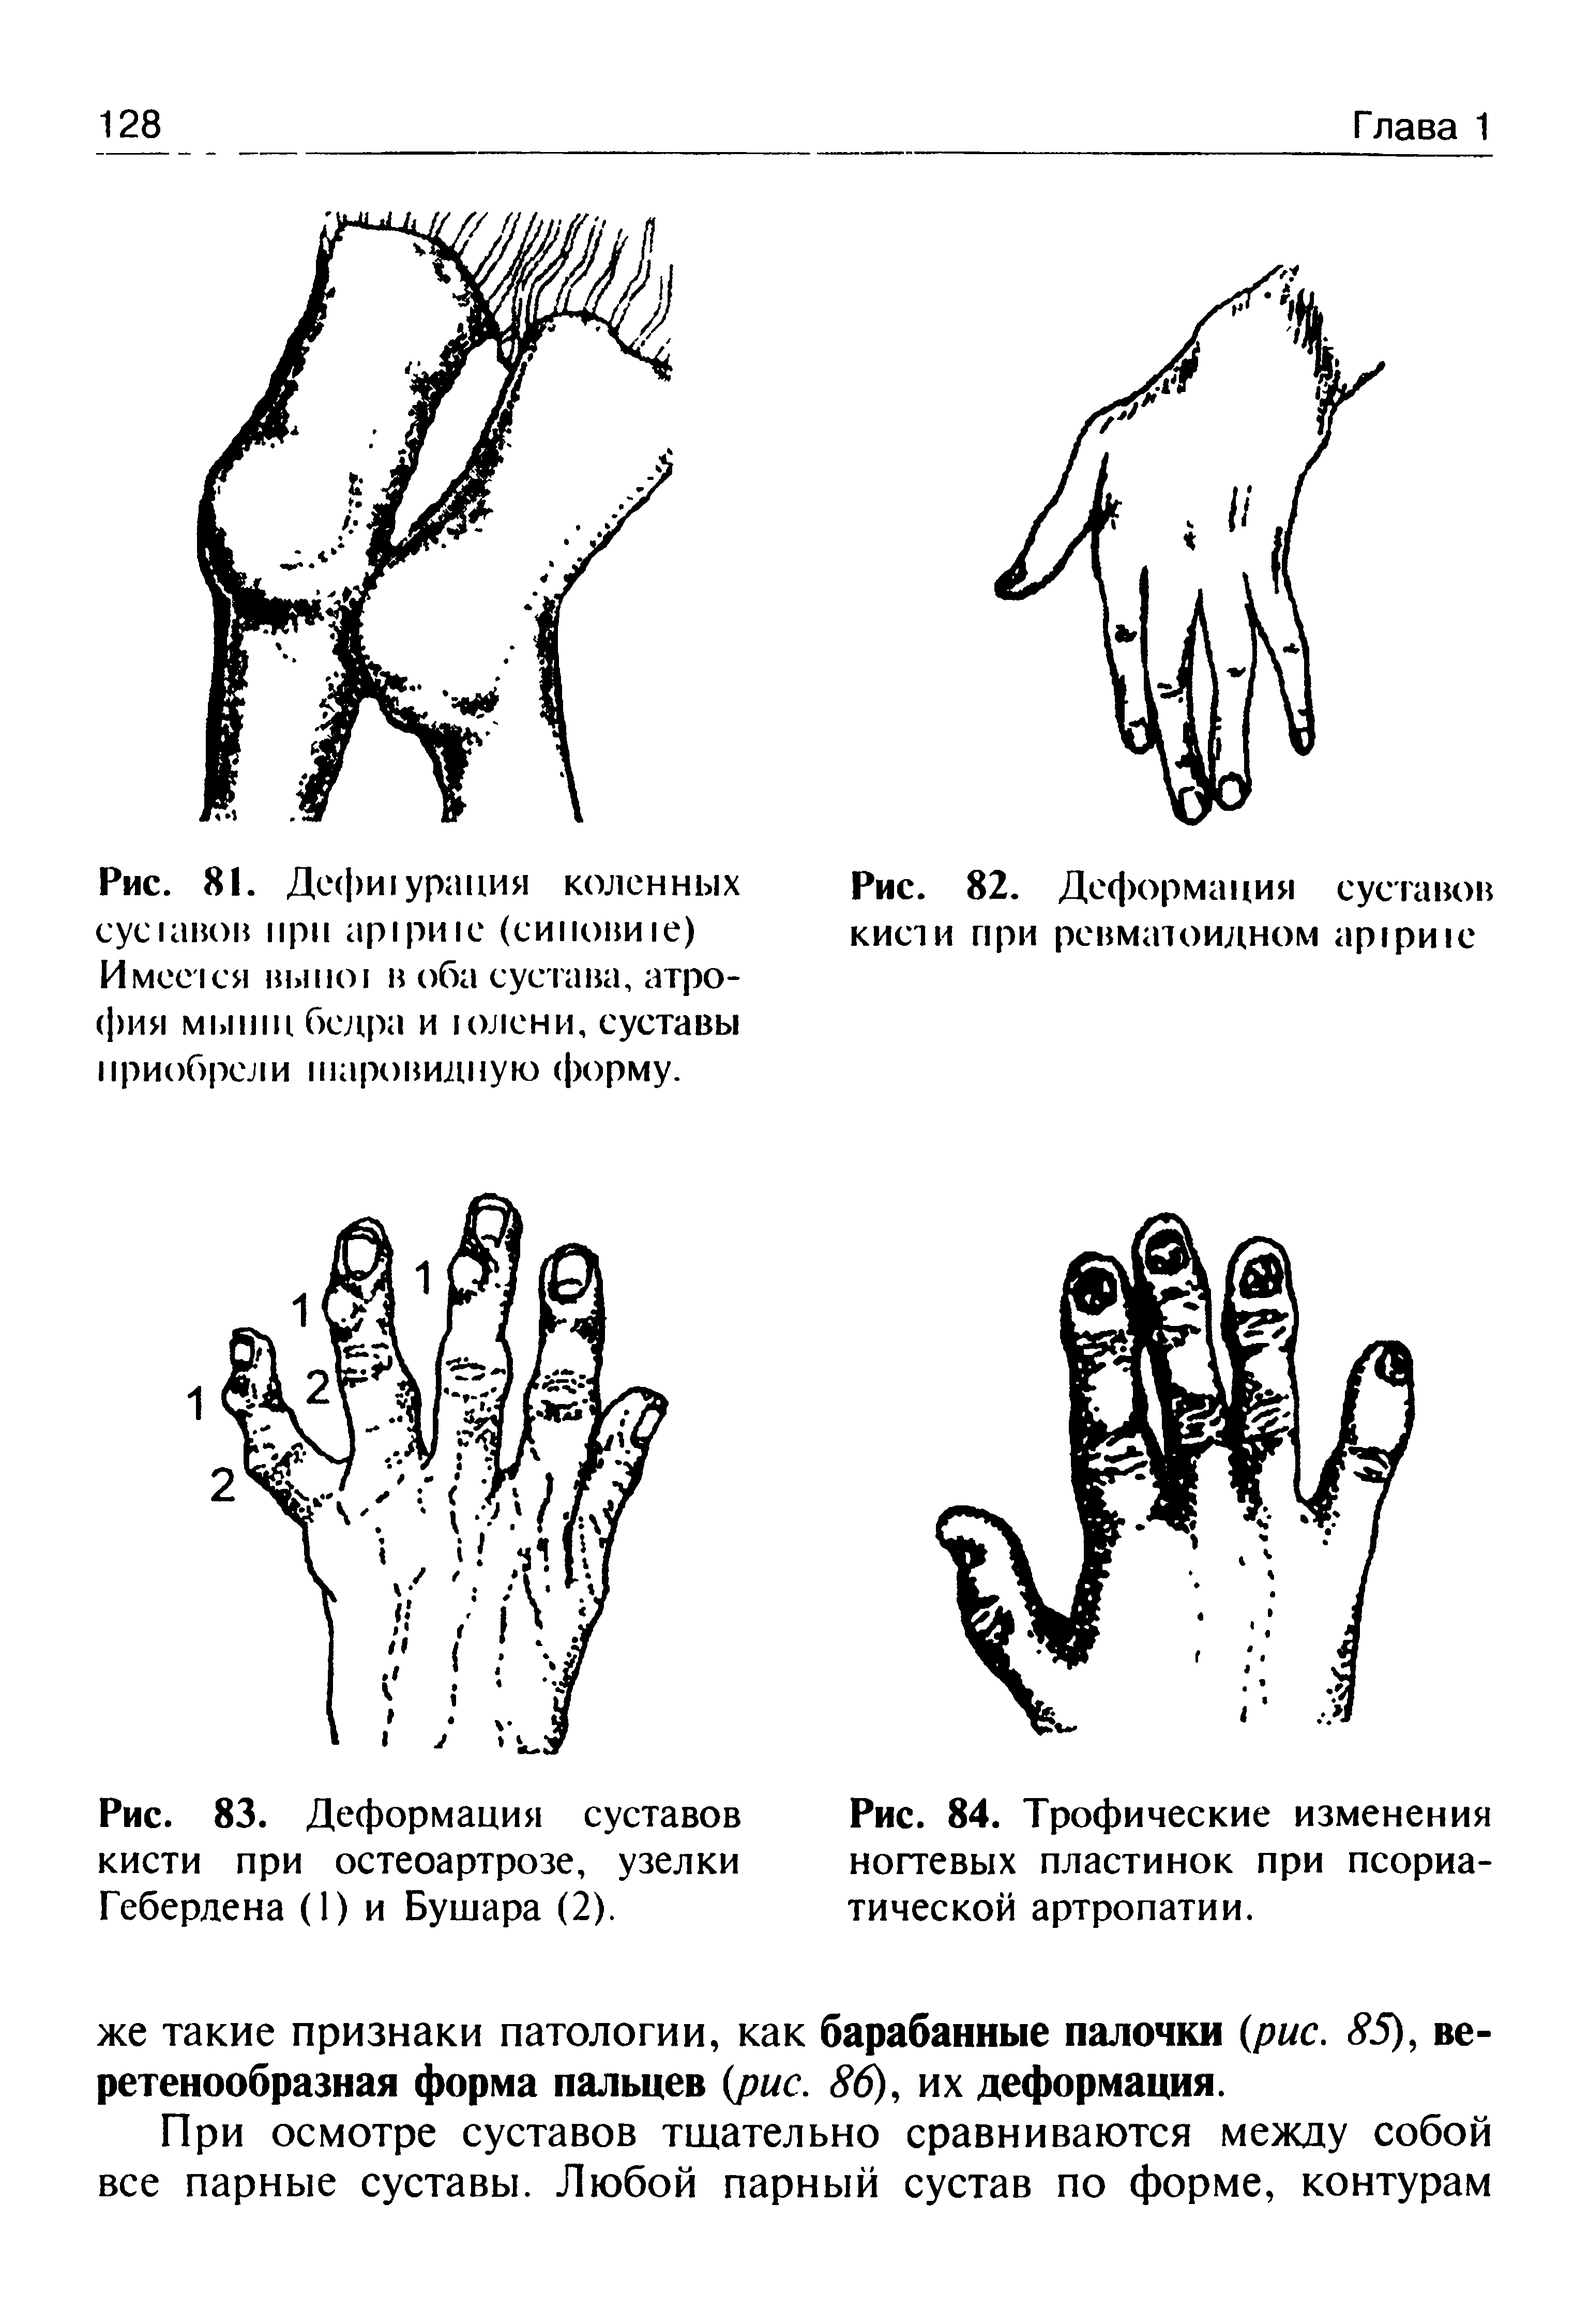 Рис. 84. Трофические изменения ногтевых пластинок при псориатической артропатии.